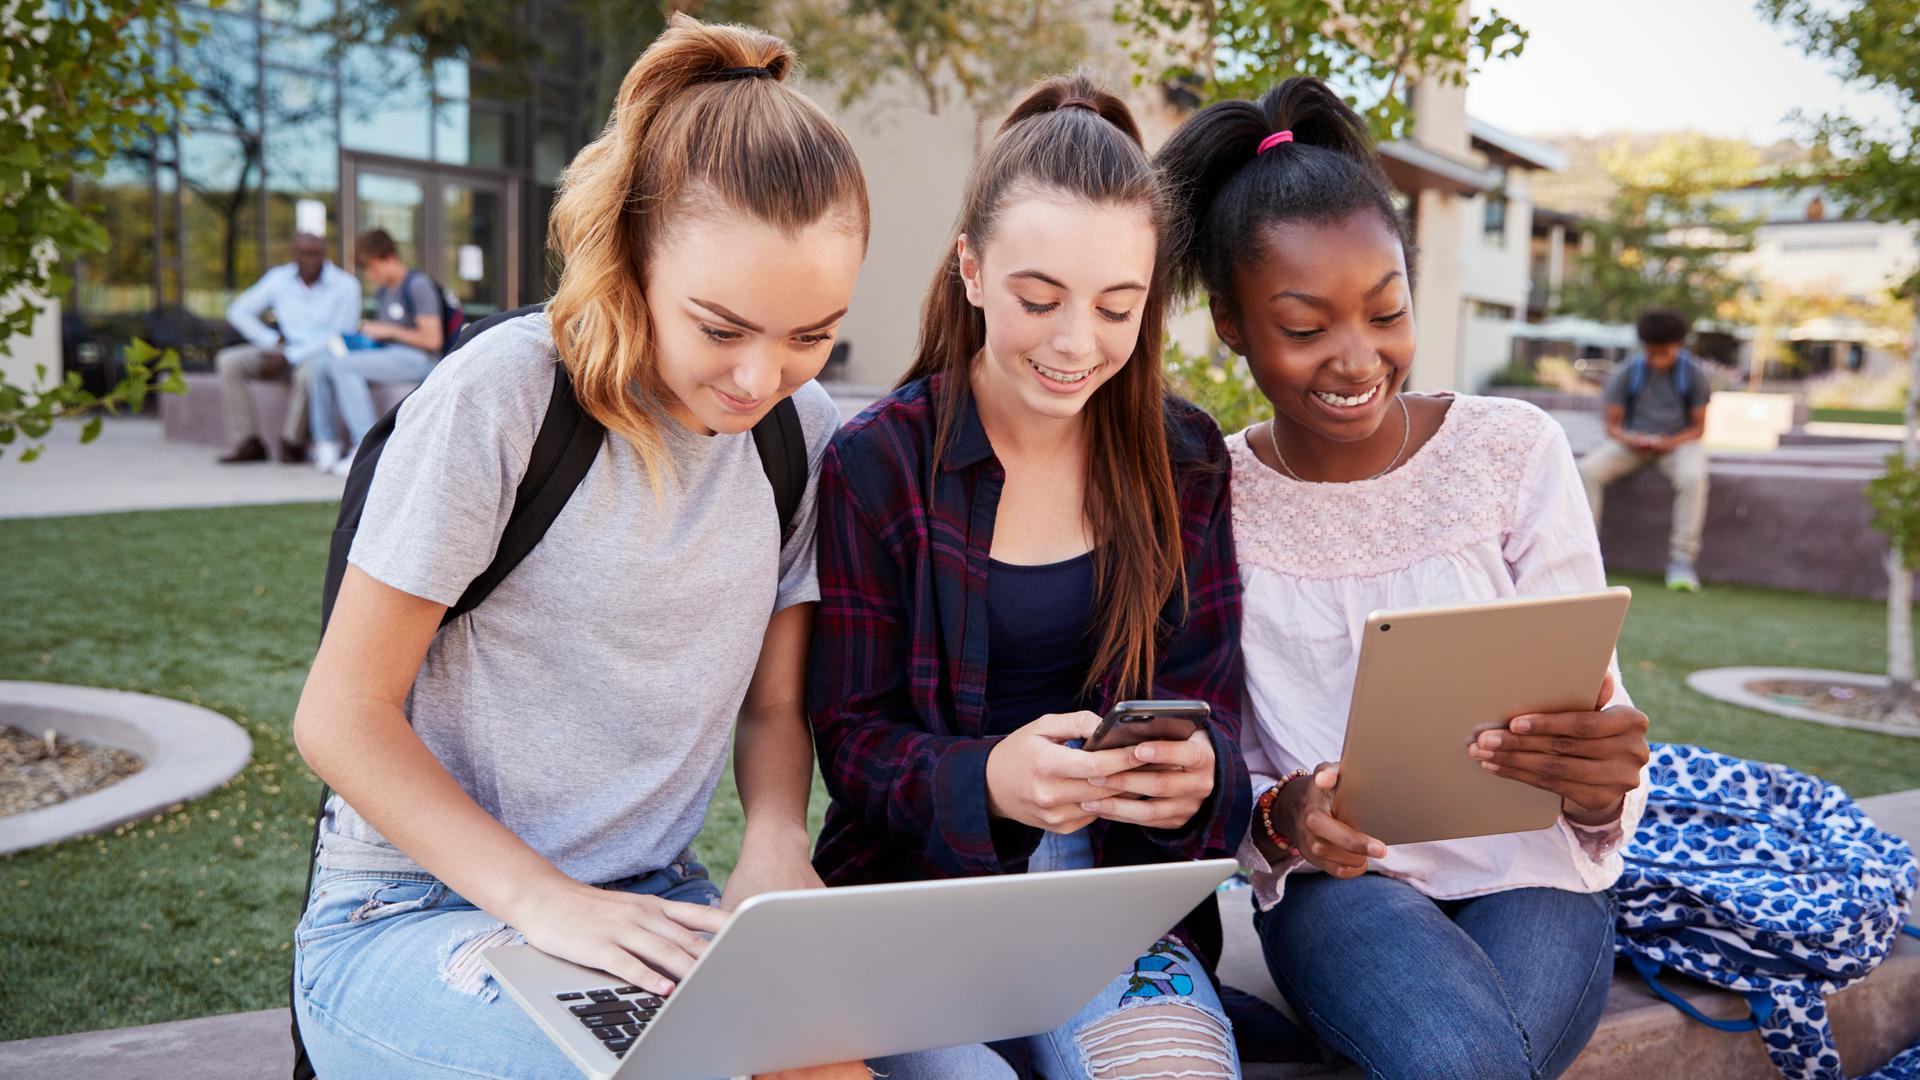 Drei Mädchen sitzen an einer Grünfläche nebeneinander, jede hat ein anderes Gerät in der Hand: Laptop, Smartphone, Tablet.